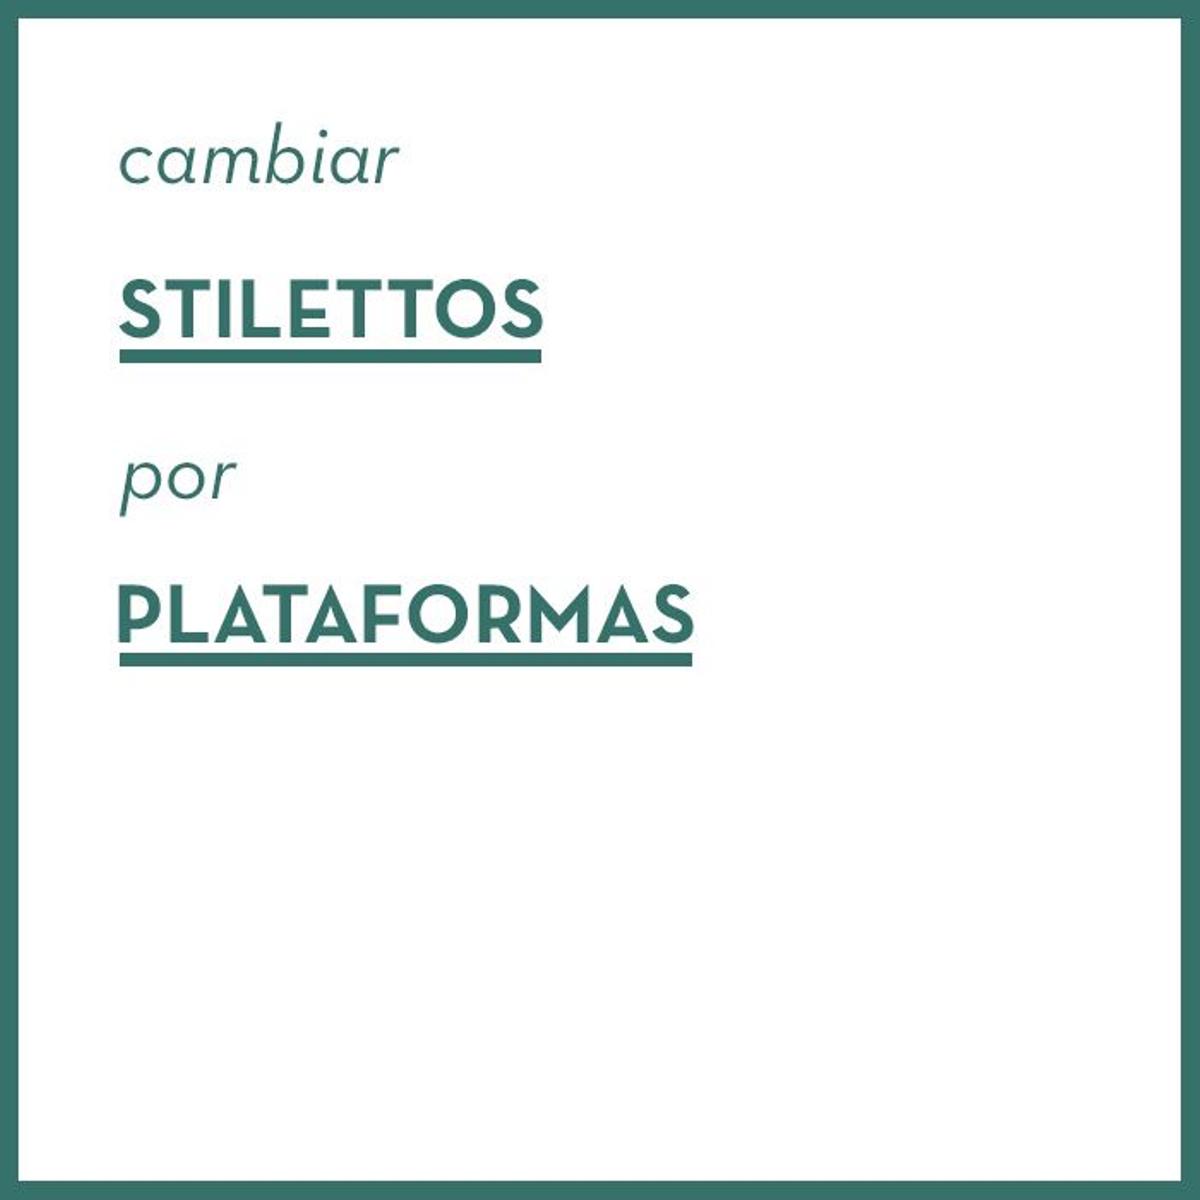 Stilettos - Plataformas